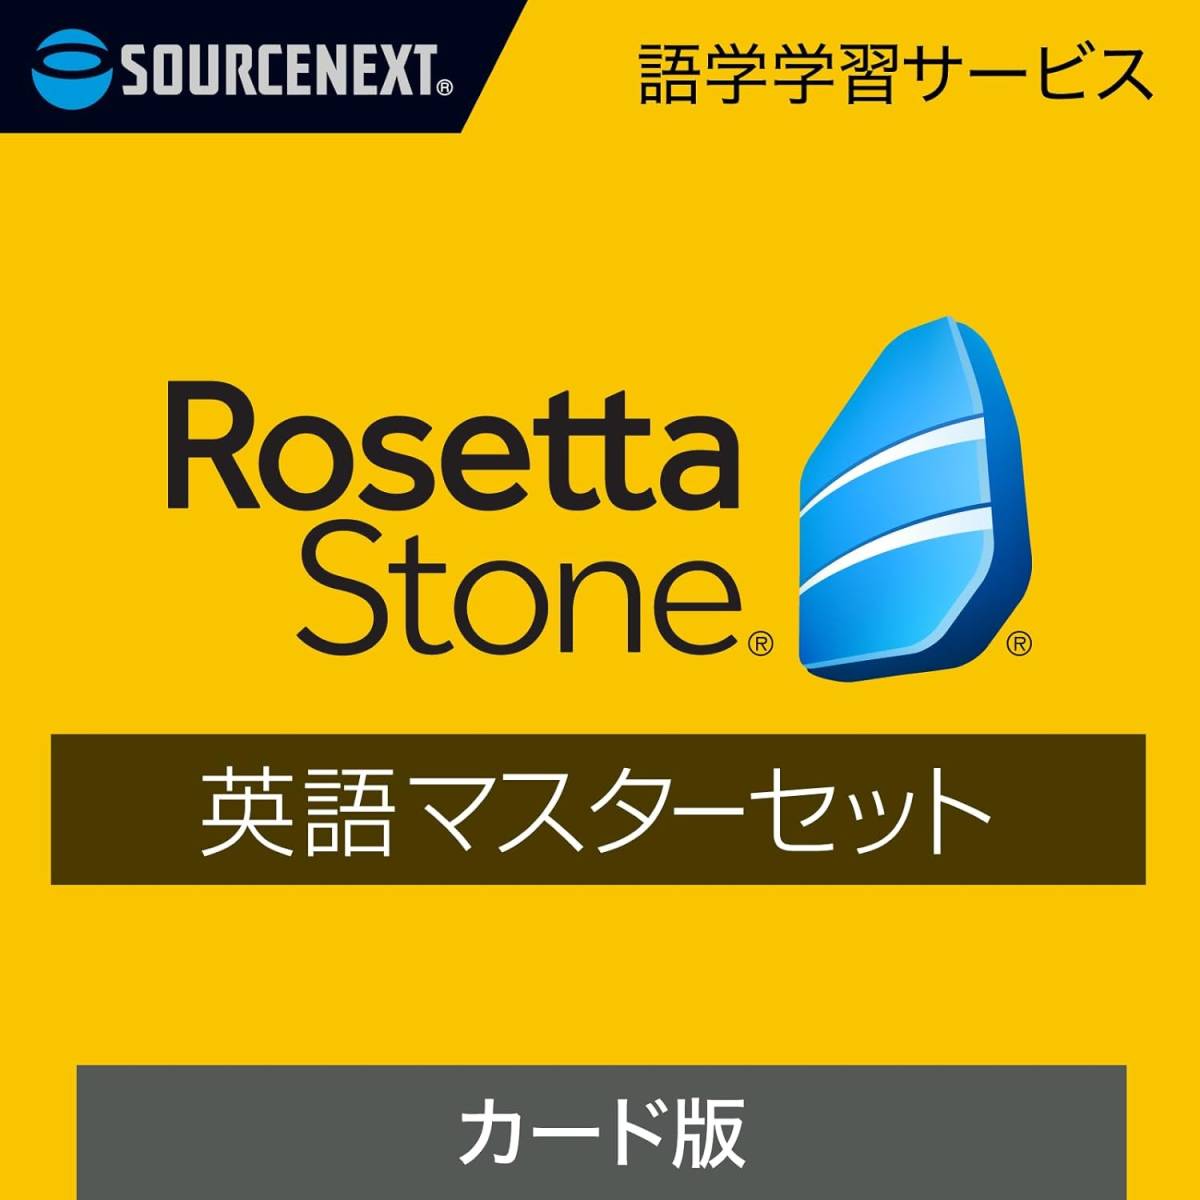 ソースネクスト ロゼッタストーン 英語マスターセット 語学学習ソフト Windows/Mac/Android/iOS対応 Rosetta Stone ダウンロードカード版の画像1